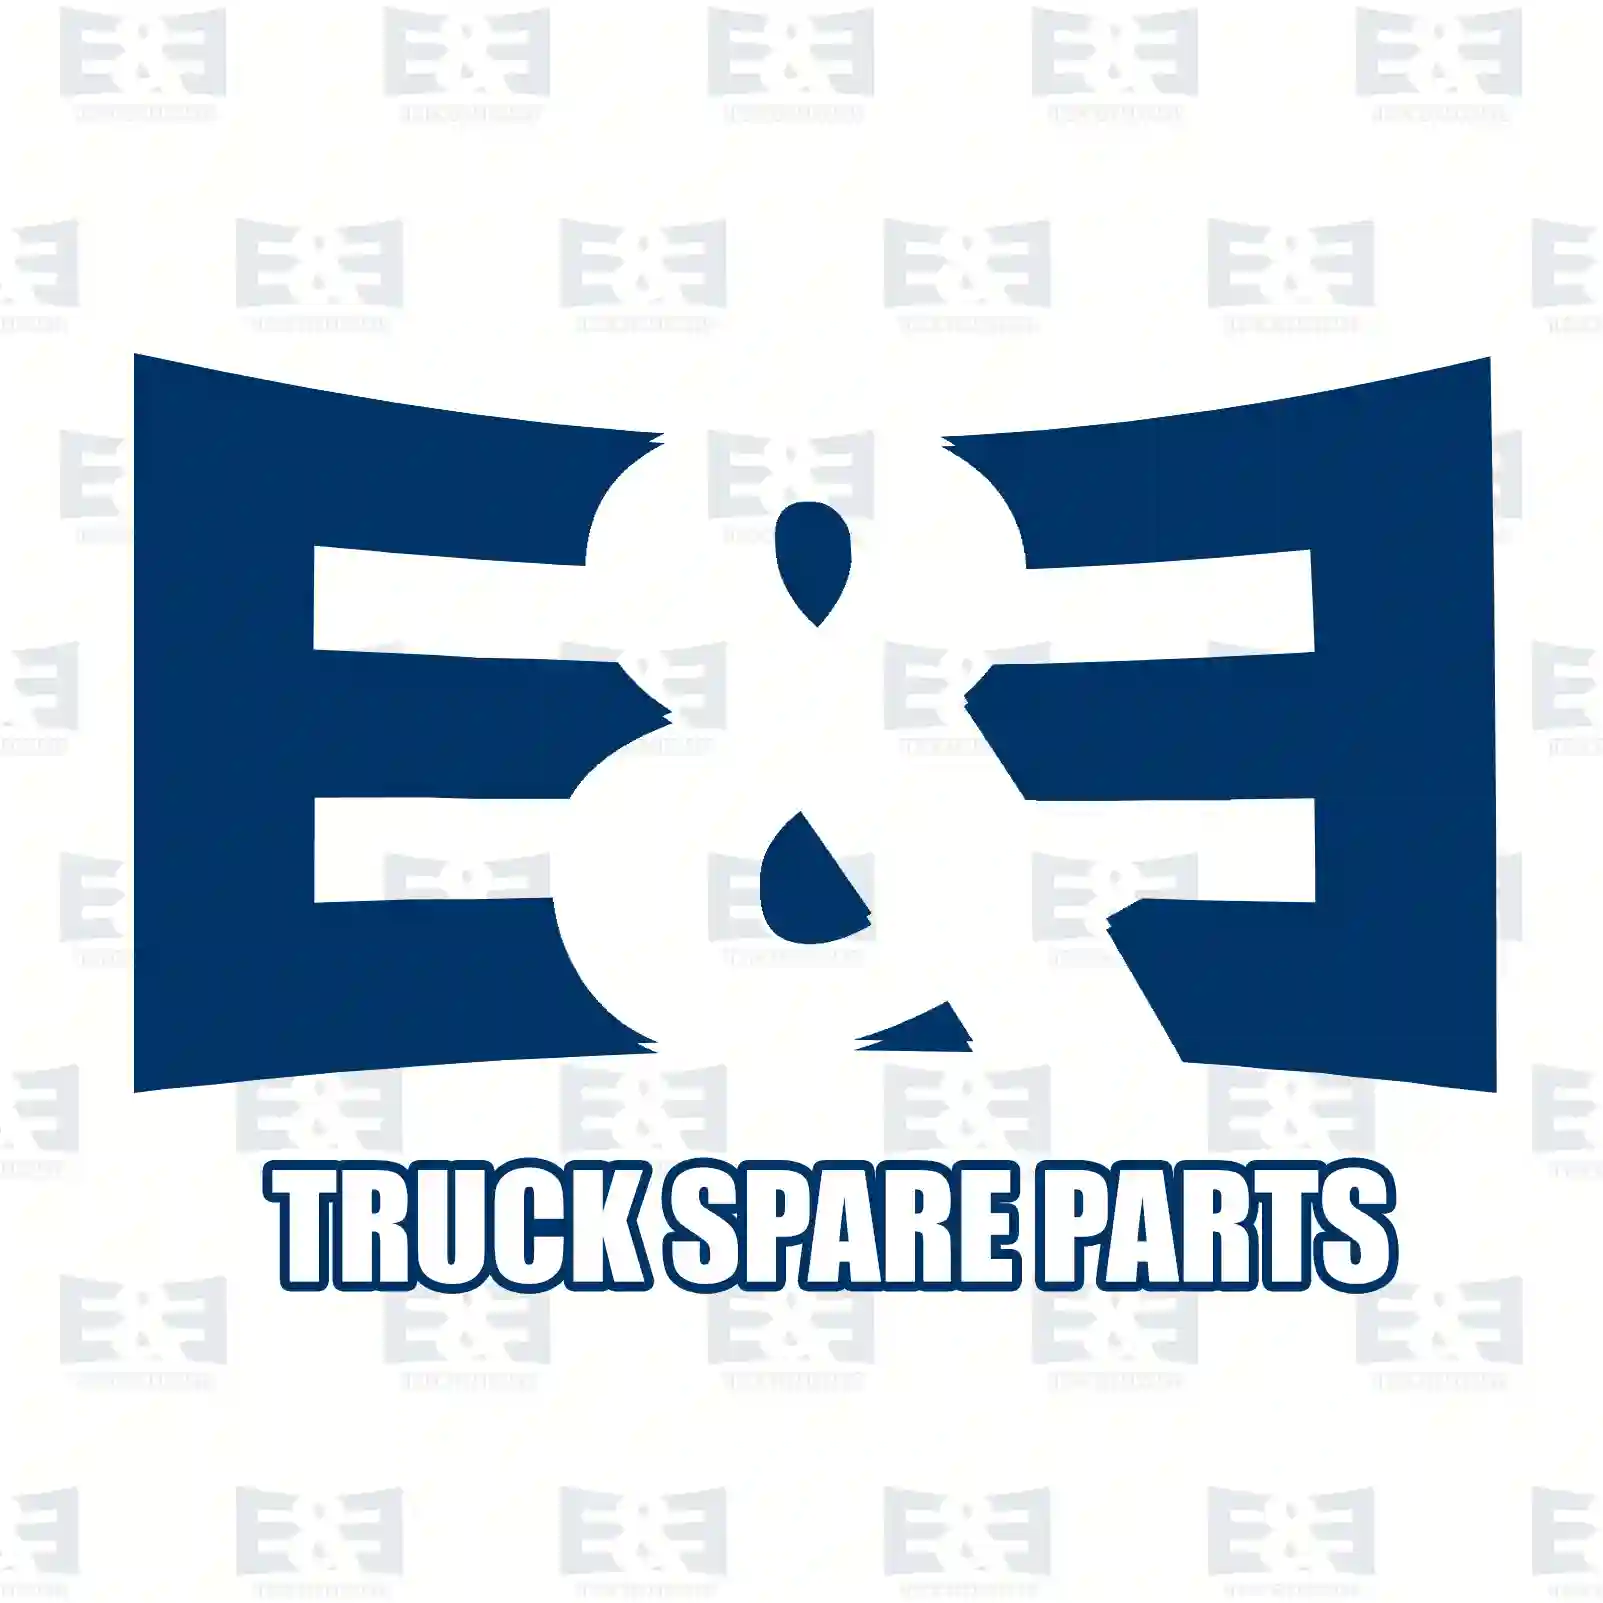 Injection line kit, 2E2286051, 4220704933S1, 4220705033S1, 4220705133S1, 4220705233S1, 4230700333S2, 4230700433S2, 4230700533S2, 4230700633S2 ||  2E2286051 E&E Truck Spare Parts | Truck Spare Parts, Auotomotive Spare Parts Injection line kit, 2E2286051, 4220704933S1, 4220705033S1, 4220705133S1, 4220705233S1, 4230700333S2, 4230700433S2, 4230700533S2, 4230700633S2 ||  2E2286051 E&E Truck Spare Parts | Truck Spare Parts, Auotomotive Spare Parts